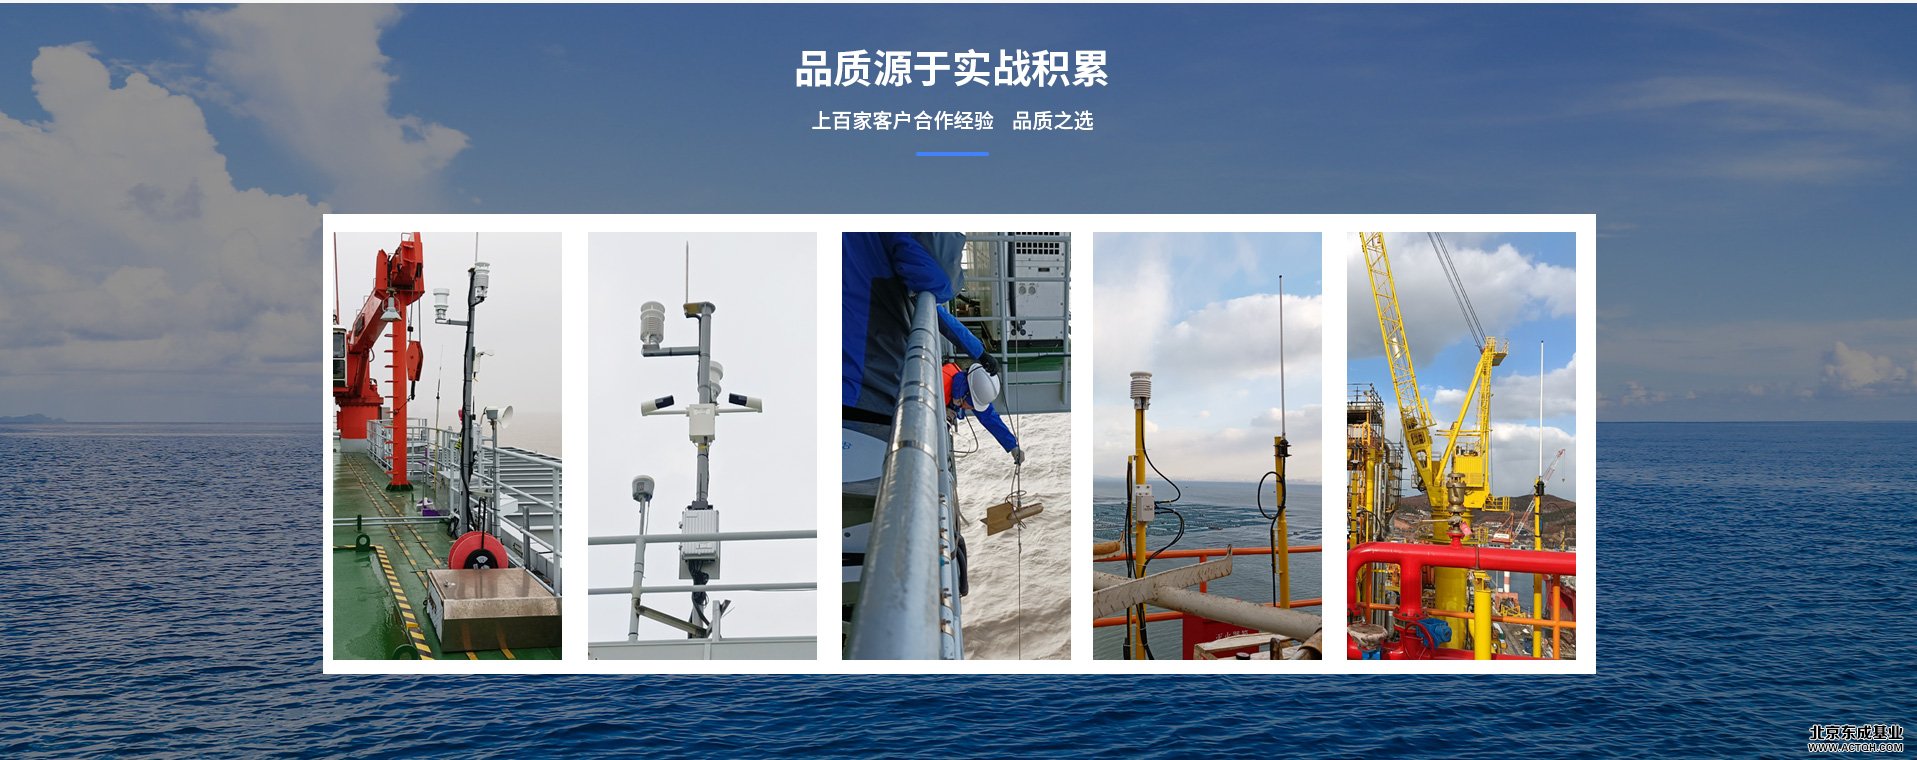 海洋氣象監測設備